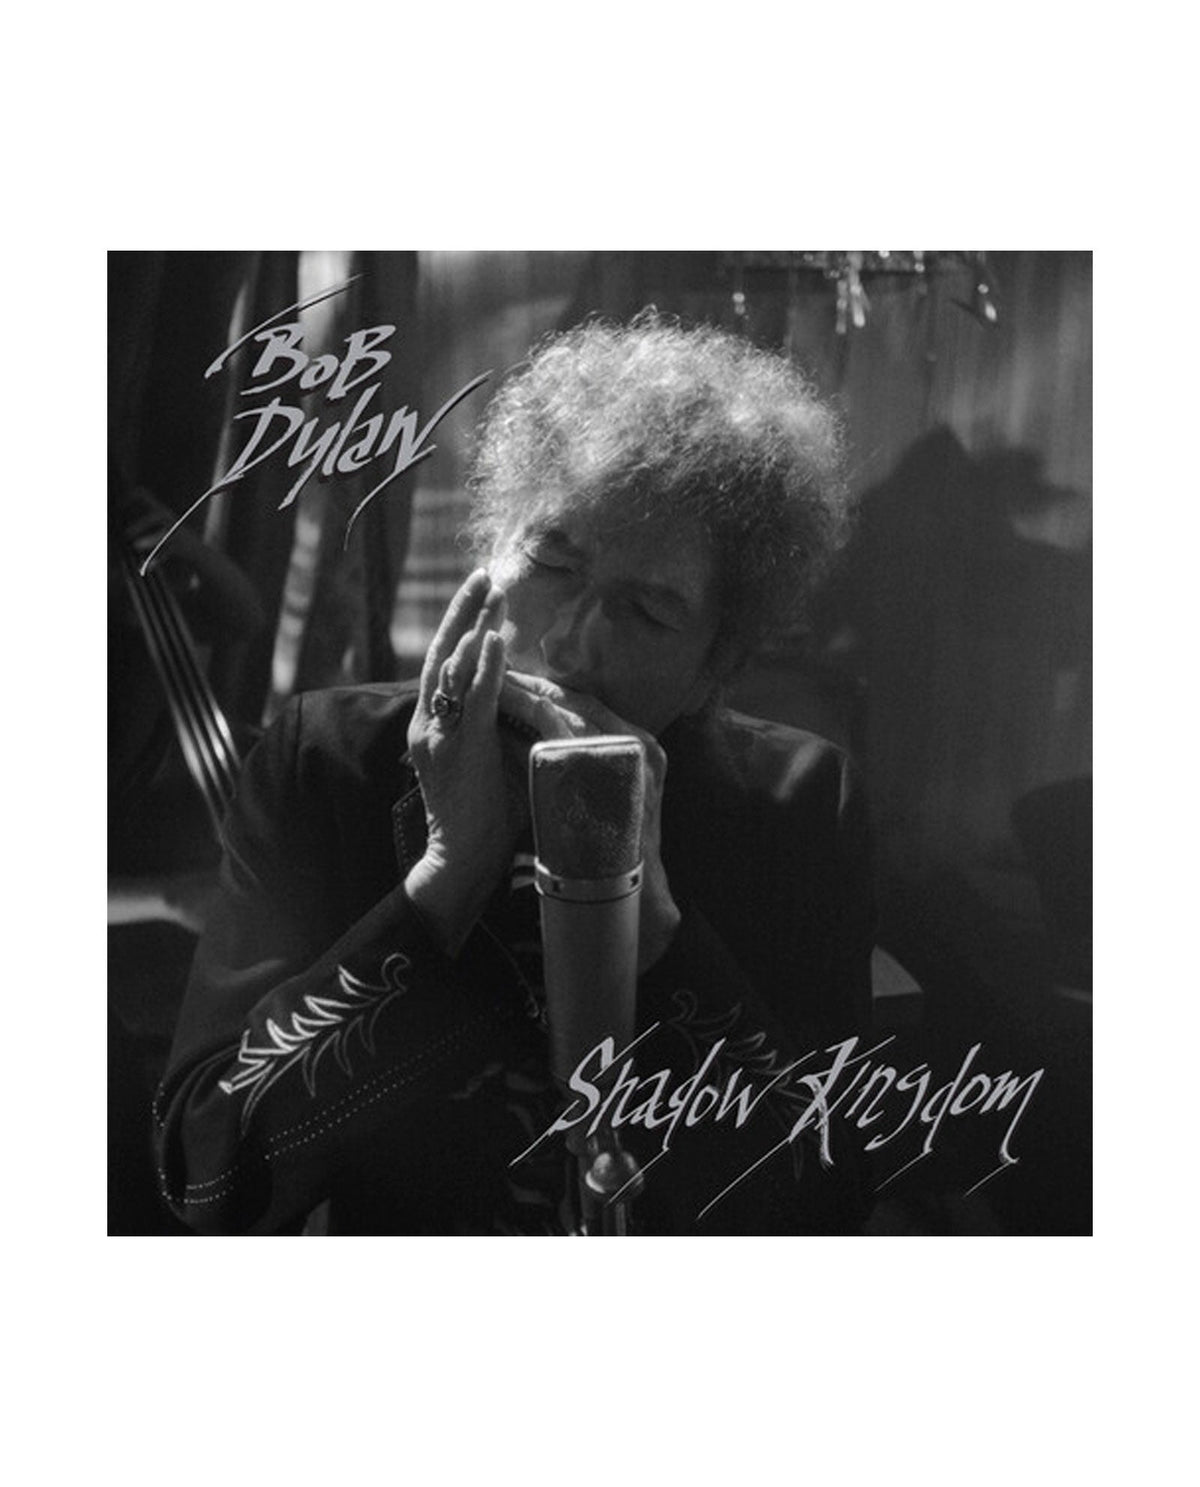 Bob Dylan - CD "Shadow Kingdom" - D2fy - D2fy